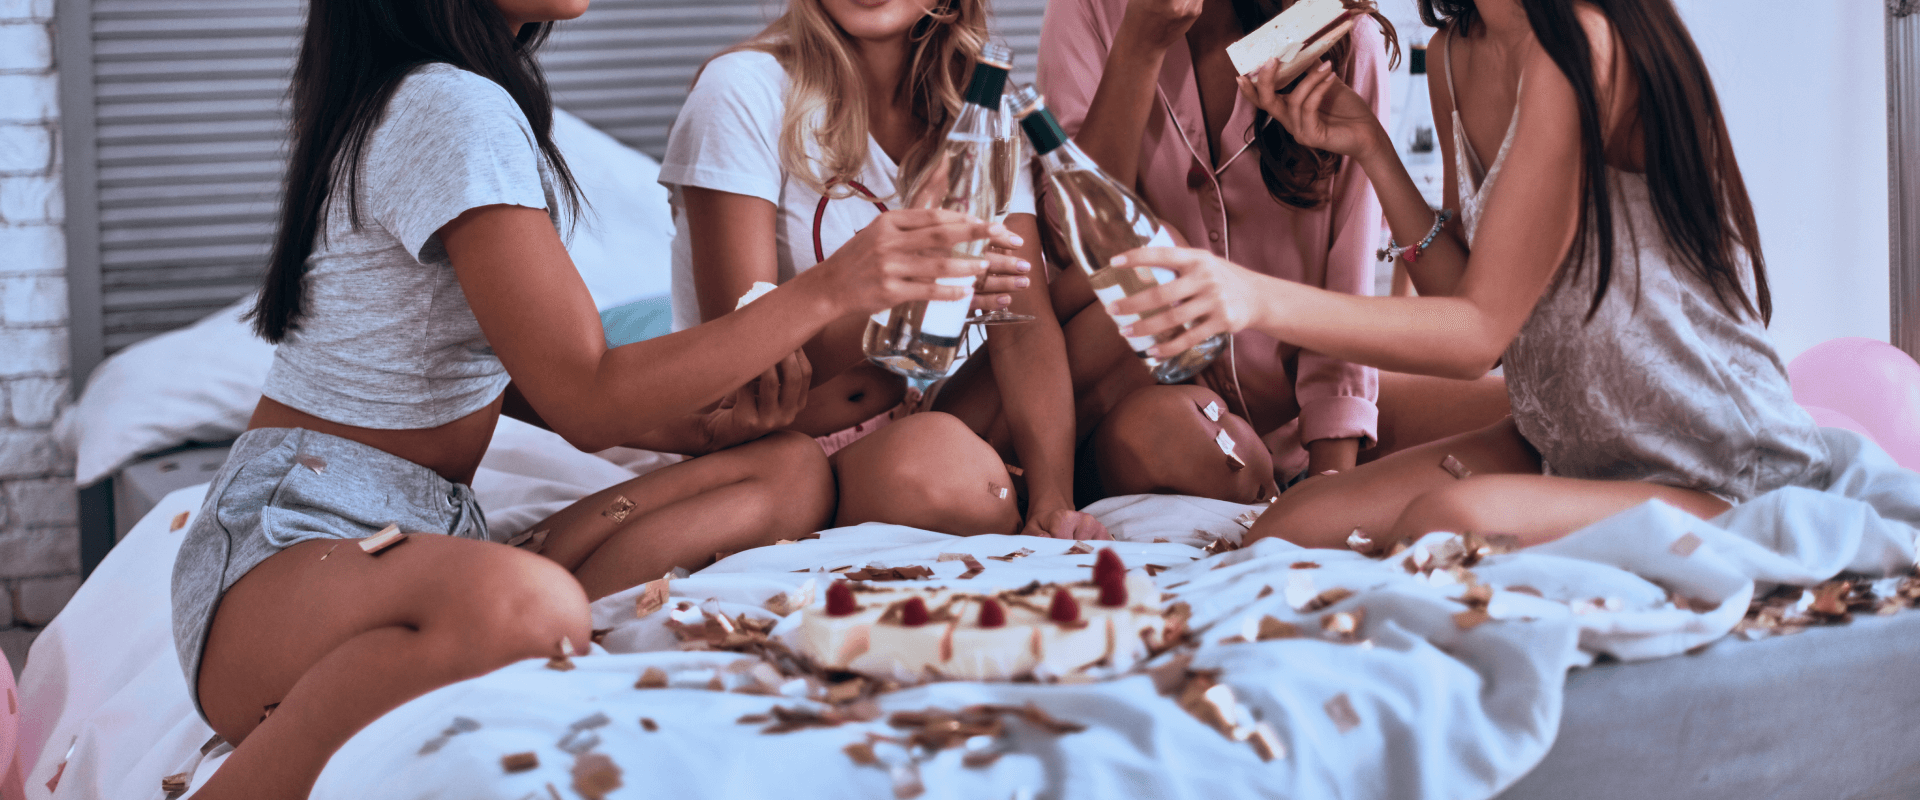 Mulheres sentadas na cama brindando com champagne.